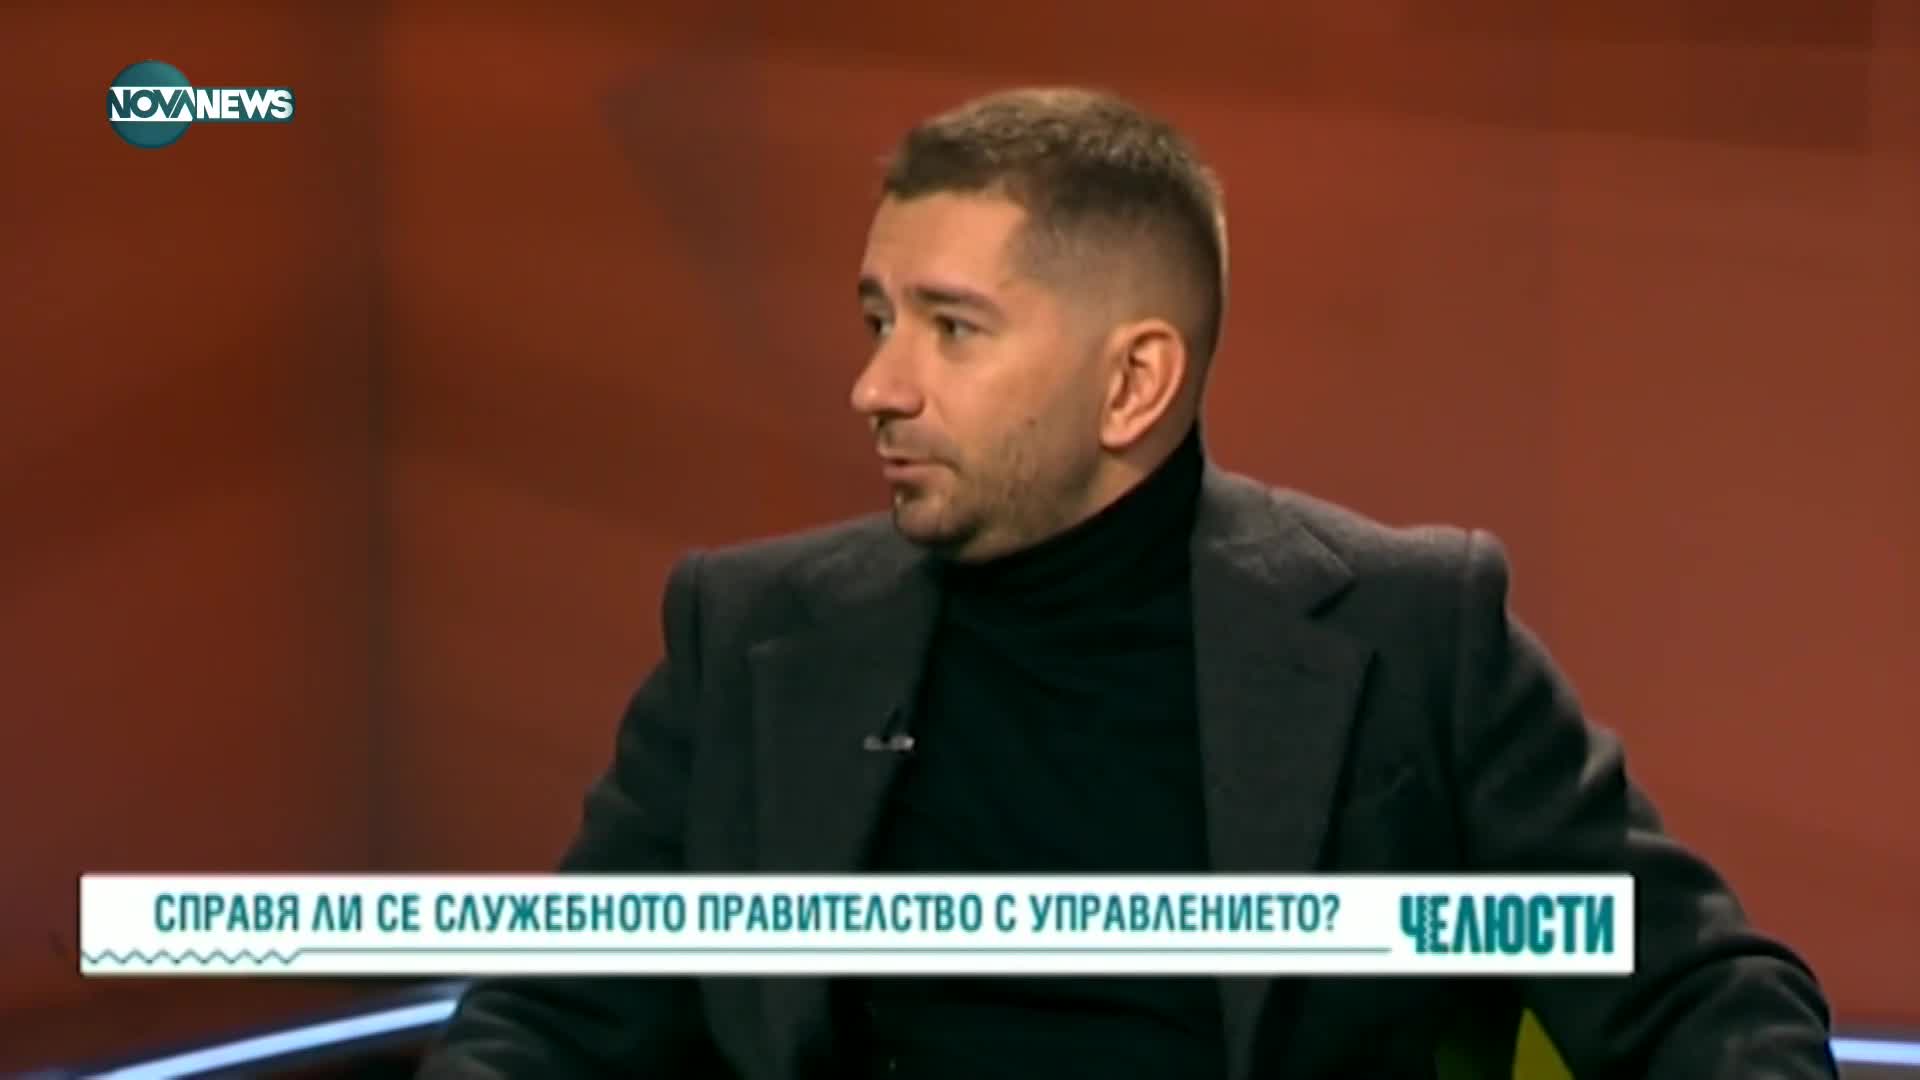 Любомир Стефанов: България няма нужда от изтребители, има нужда от въздушен контрол